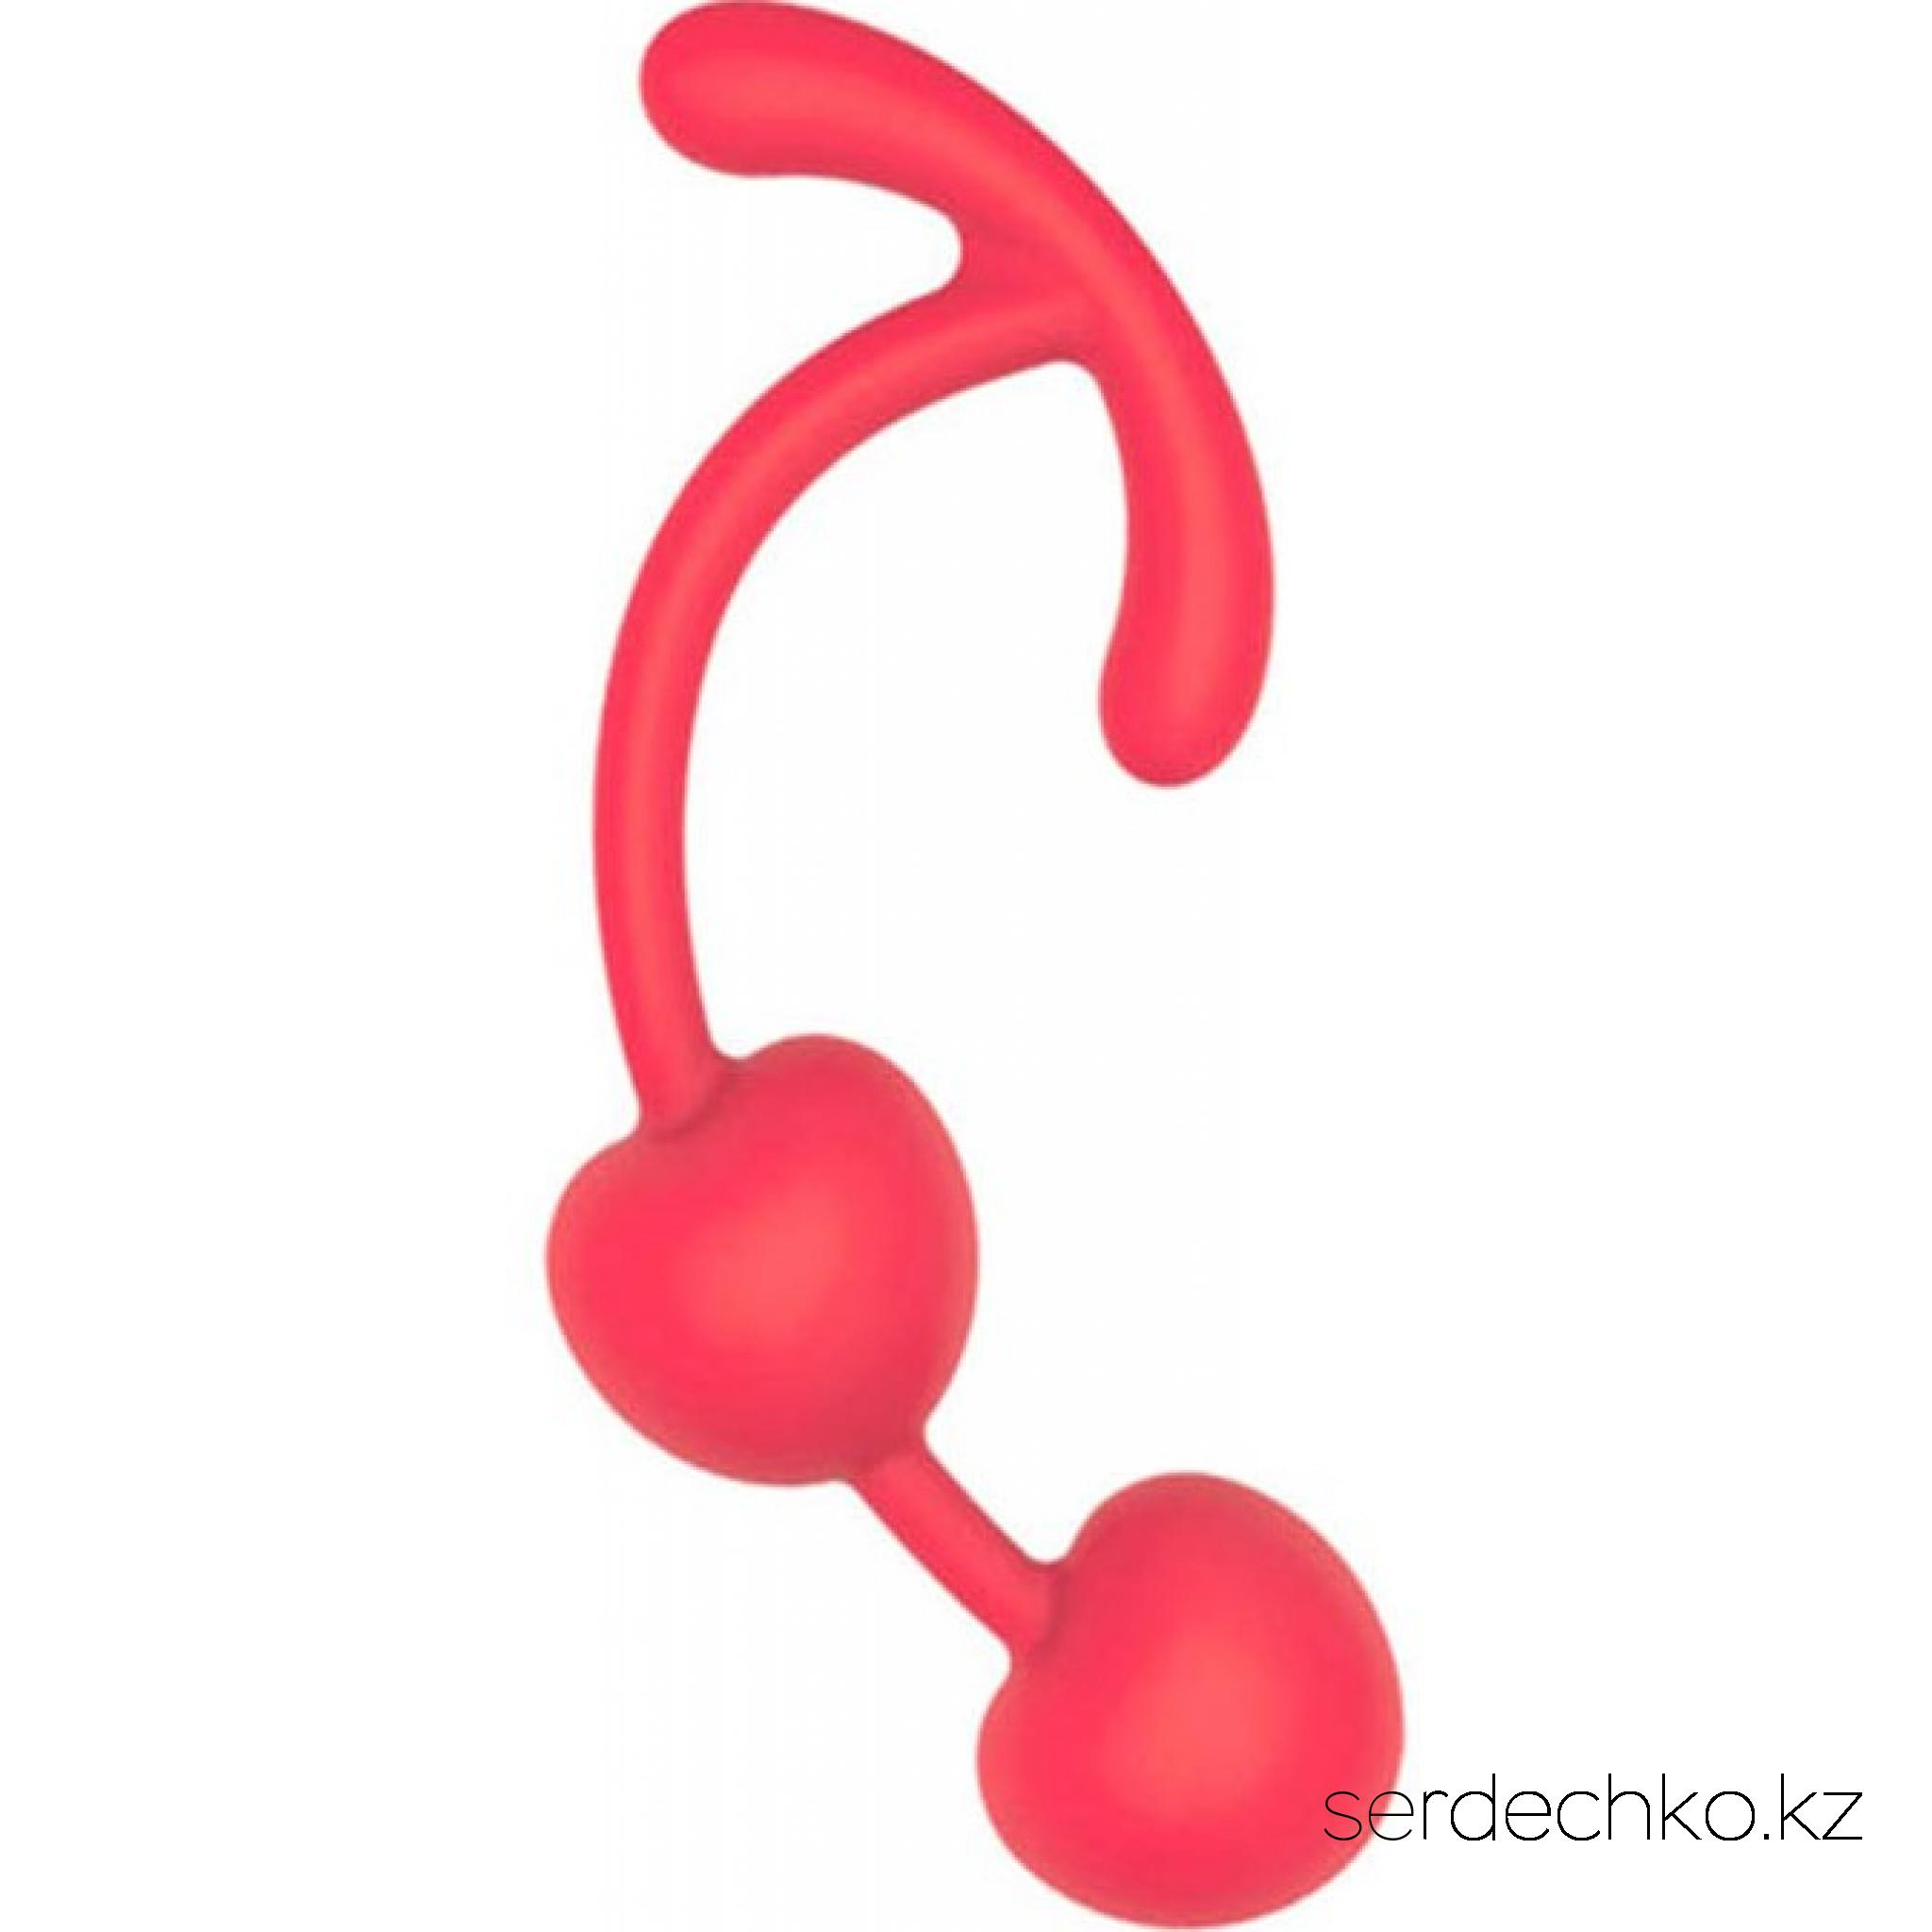 Вагинальные шарики Sweet Toys D 33 мм, 
	Фитнес интимных мышц не только способствуют укреплению здоровья женщины, но и улучшает ее сексуальную жизнь, делает более подтянутой, уверенной в себе и способной доставлять невероятное удовольствие партнеру. Вагинальные шарики со смещенным центром тяжести (внутри каждого шарика находятся шарики меньшего размера, которые перекатываются во время движения) – отличный тренажер для подобных упражнений. Такая конструкция интимного аксессуара позволяет эффективно тренировать мышцы половых органов. Изделие легко вводится, снабжено шнурком-хвостиком для легкого извлечения.
